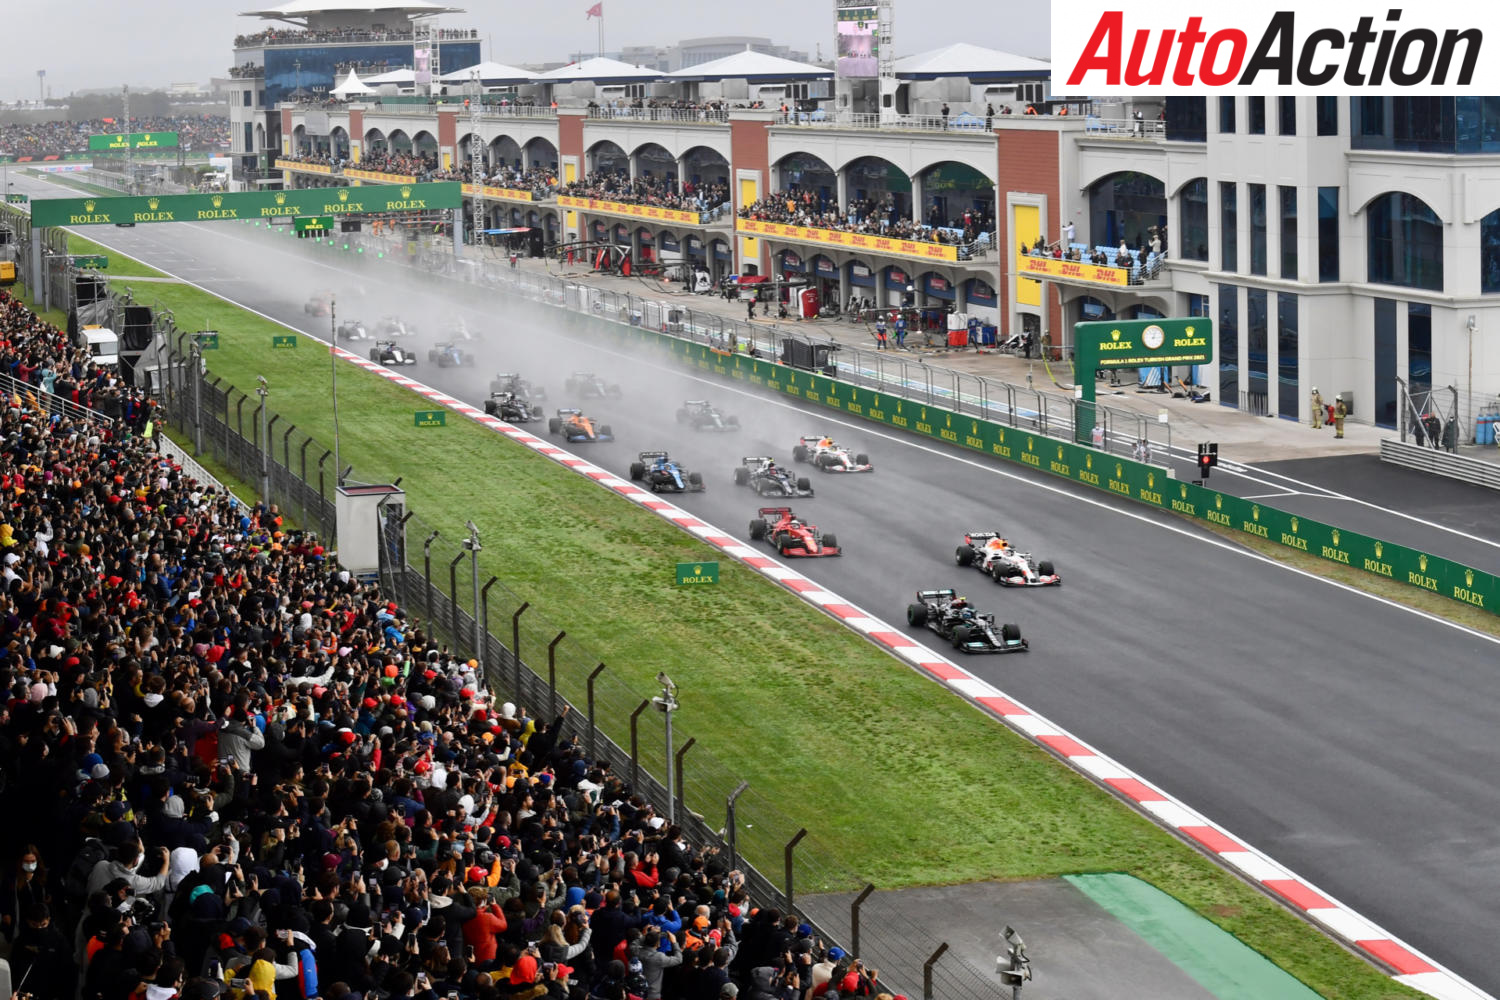 Turkish GP set to replace Sochi - Image: Motorsport Images